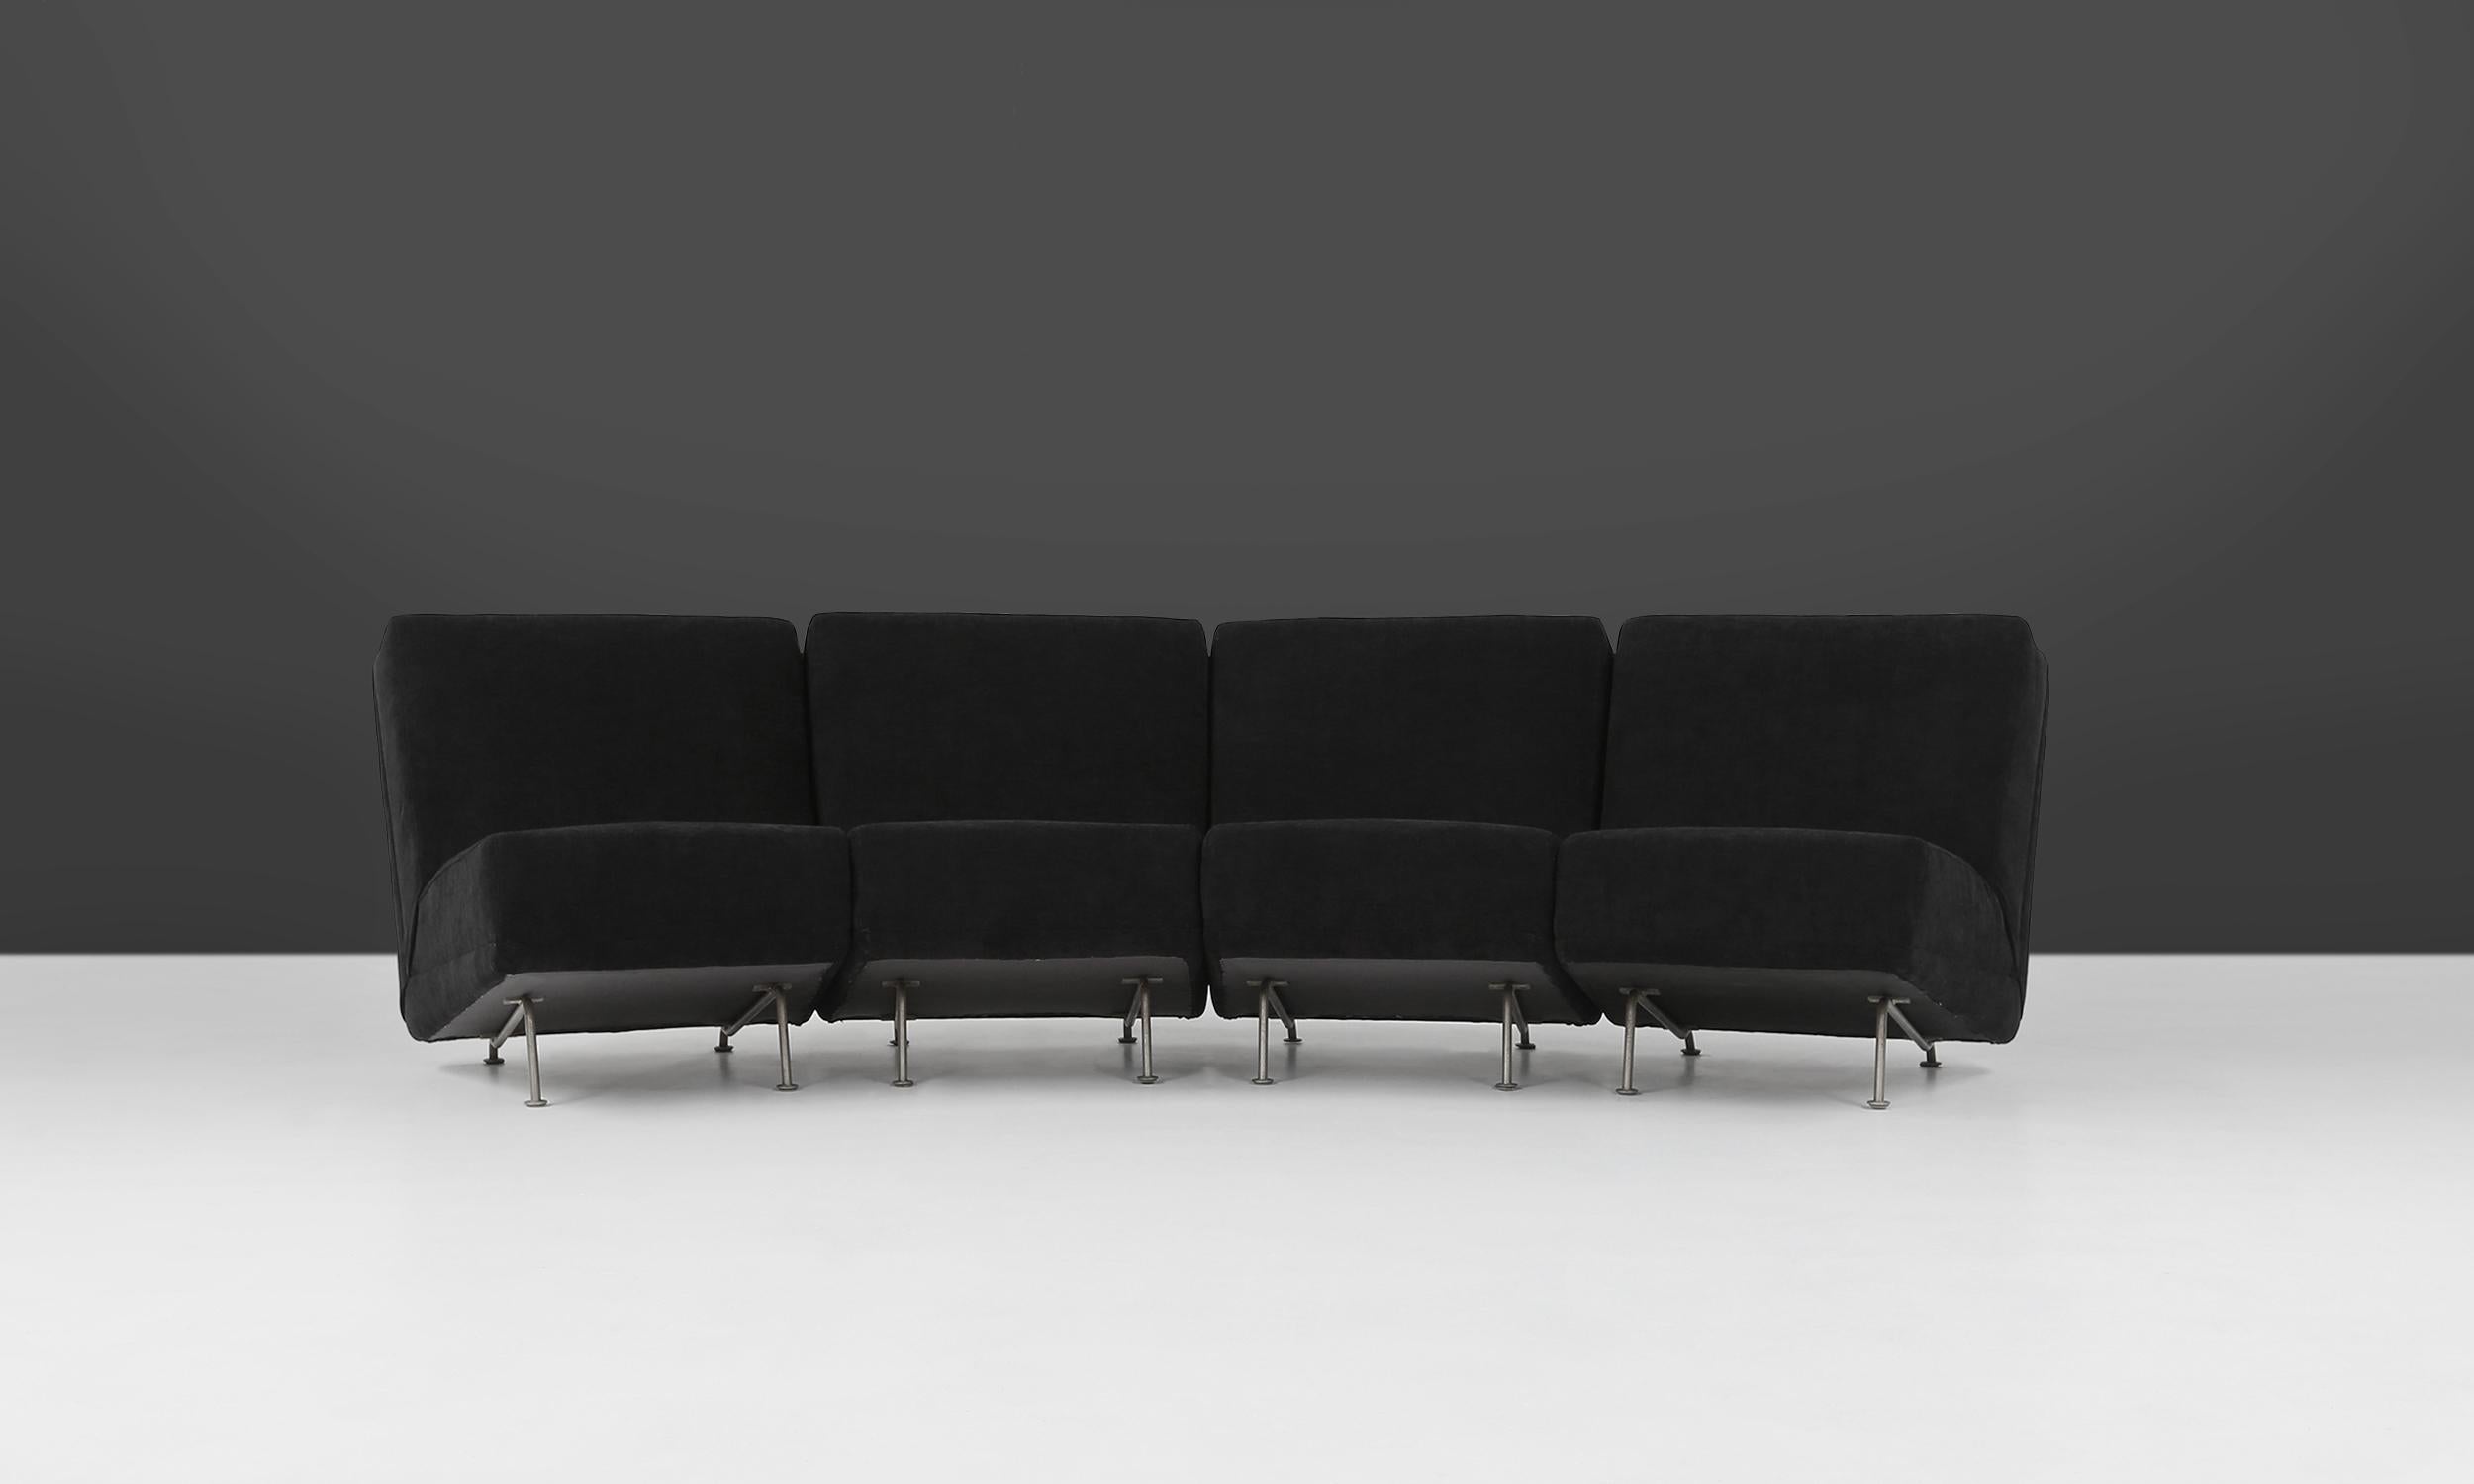 Groupe de sièges modulaires créé par le designer néerlandais Theo Ruth pour Artifort dans les années 1950. Les quatre éléments peuvent être utilisés séparément ou combinés ensemble pour former un canapé à quatre places. Ces chaises ont une base en